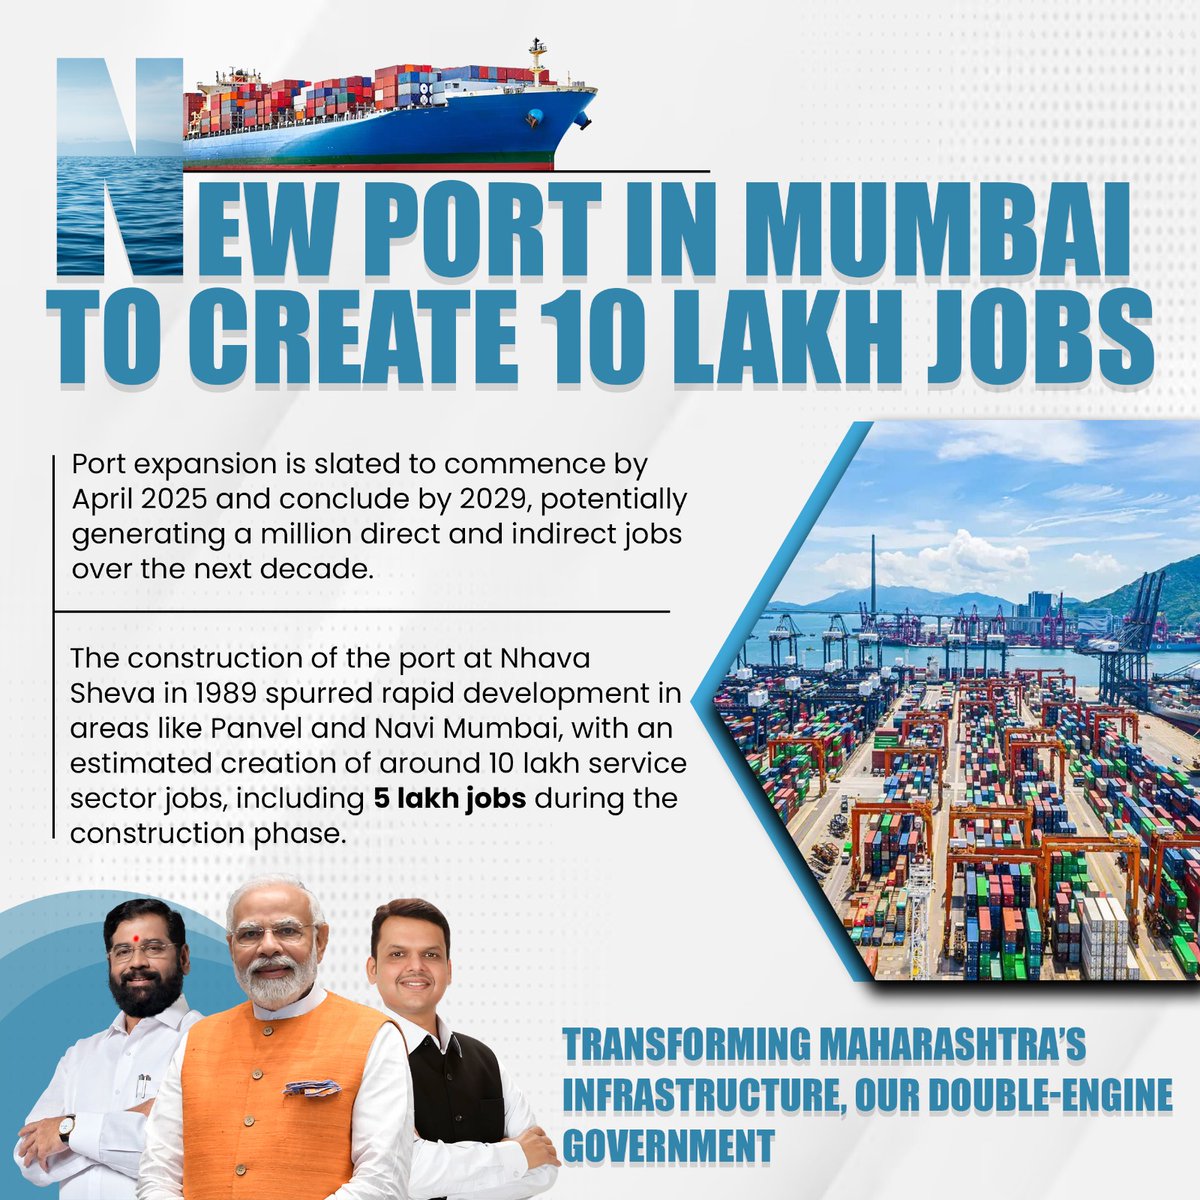 मुंबई के बंदरगाह का विस्तार अवसरों के एक नए युग की शुरुआत करता है, जिसमें अगले दशक में दस लाख नौकरियां पैदा करने की क्षमता है। महाराष्ट्र में रोजगार और आर्थिक विकास को बढ़ावा देने के लिए पीएम मोदी और सीएम एकनाथ शिंदे की प्रतिबद्धता का प्रमाण!